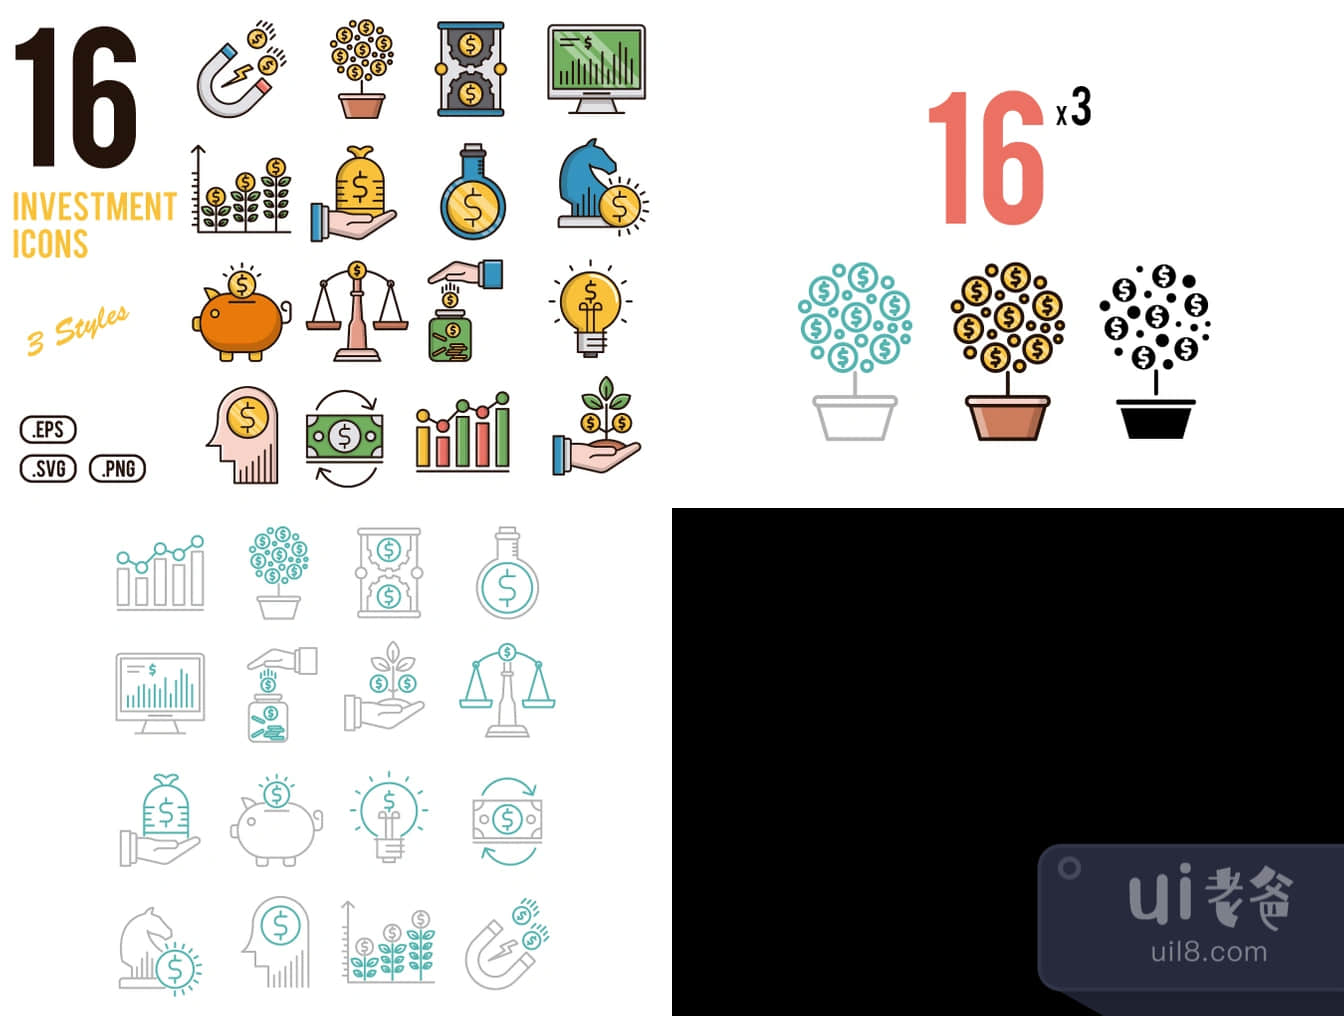 16个投资图标 (16 Investment Icons)插图